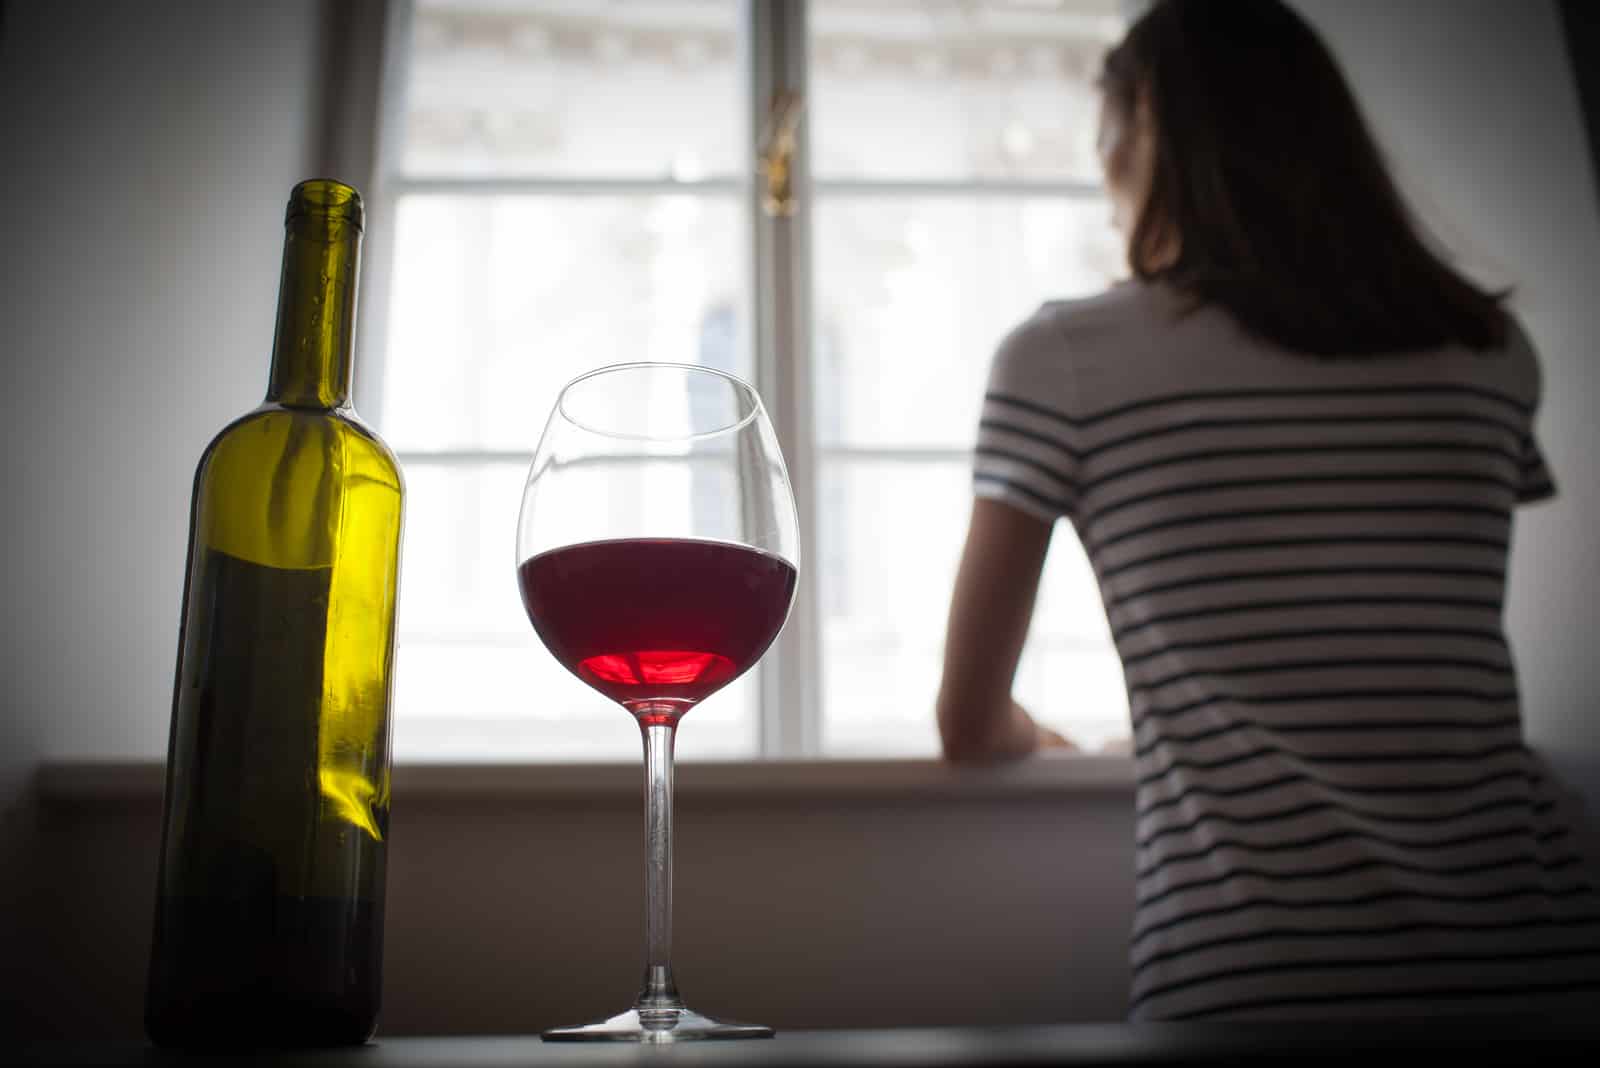 sur la table se trouve une bouteille de vin et un verre de femme debout près de la fenêtre